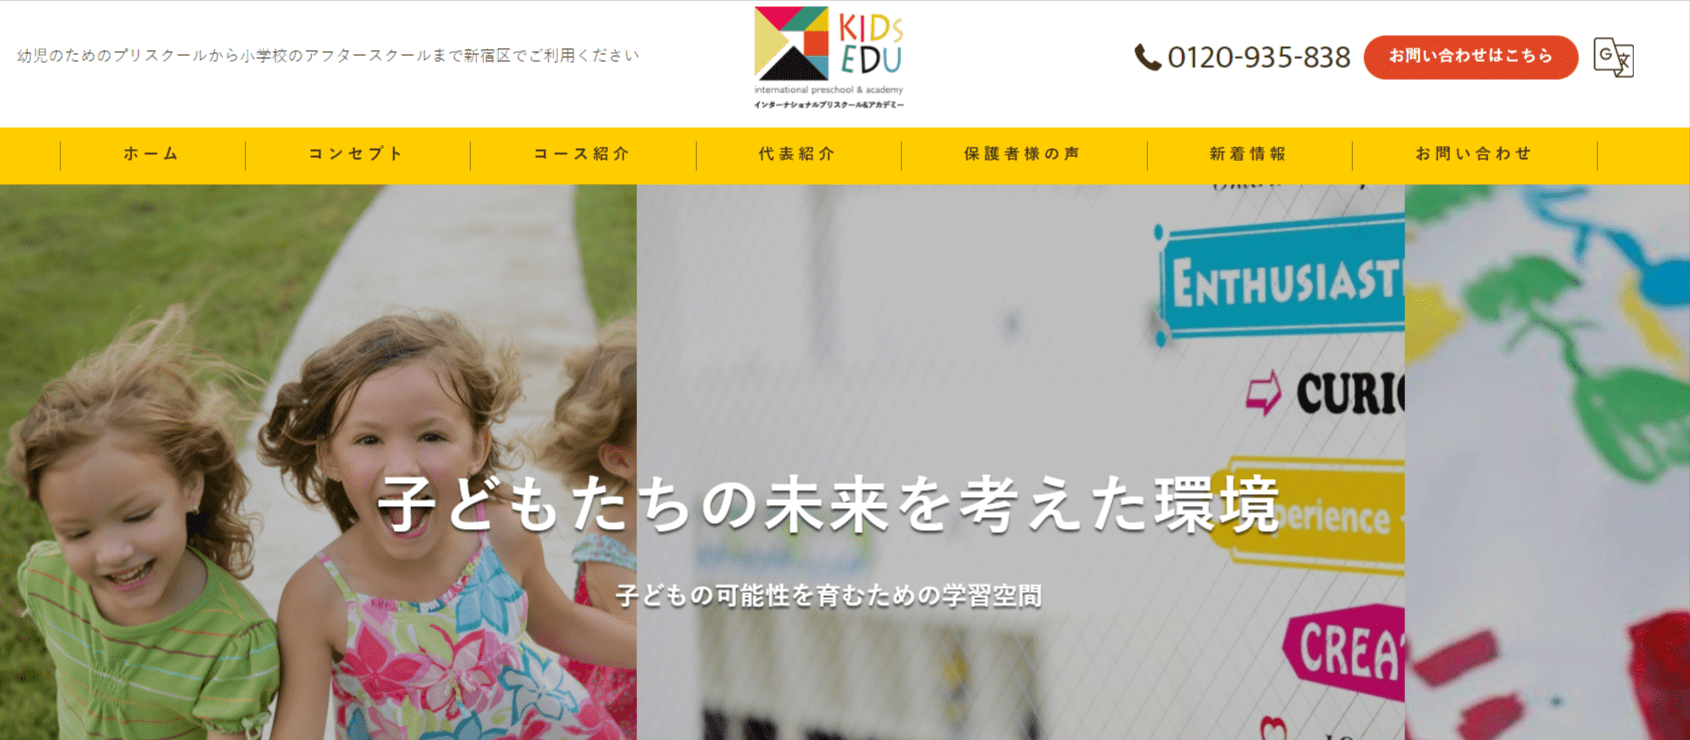 KIDS-EDU-インターナショナルプリスクール-アカデミーの画像